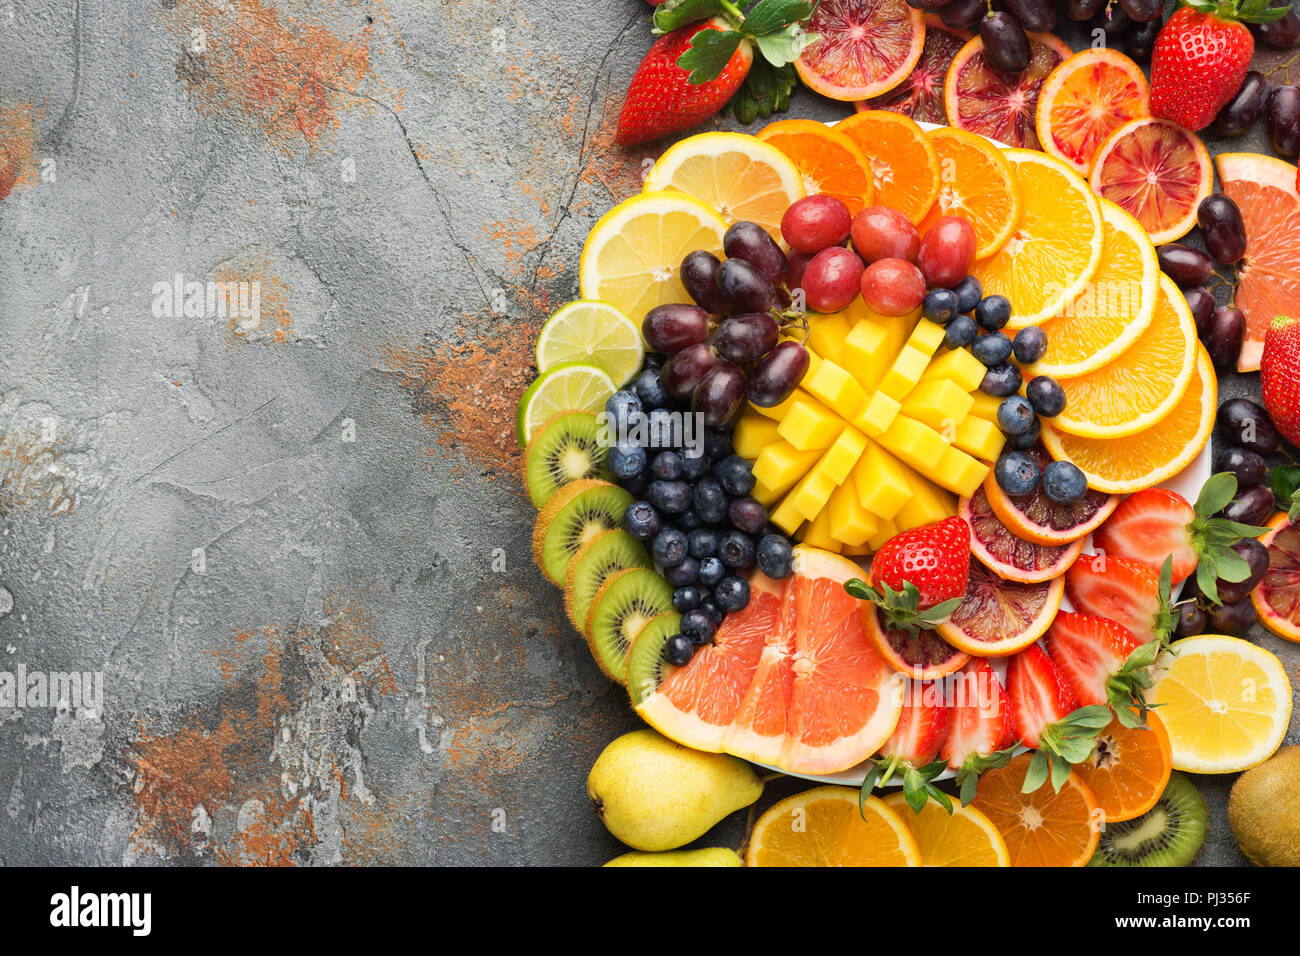 Les fruits colorés en couleurs arc-en-ciel raisins oranges fraises kiwis mangue pamplemousses sur les bleuets la table de béton gris, vue du dessus, copiez l'espace, selective focus Banque D'Images